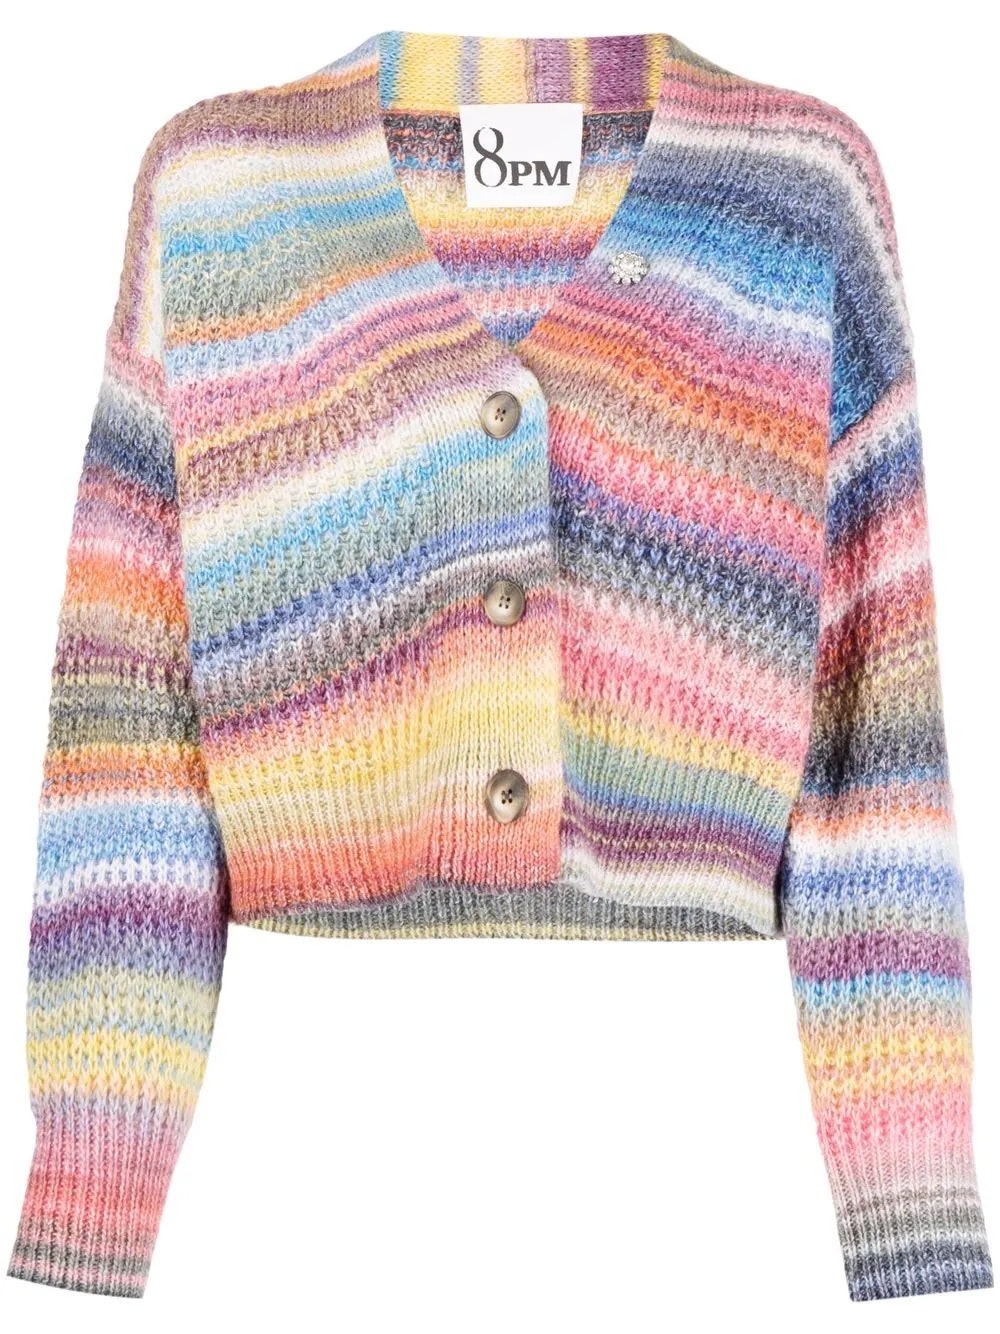 Разноцветный кардиган — теплая и яркая замена пиджаку этой осенью